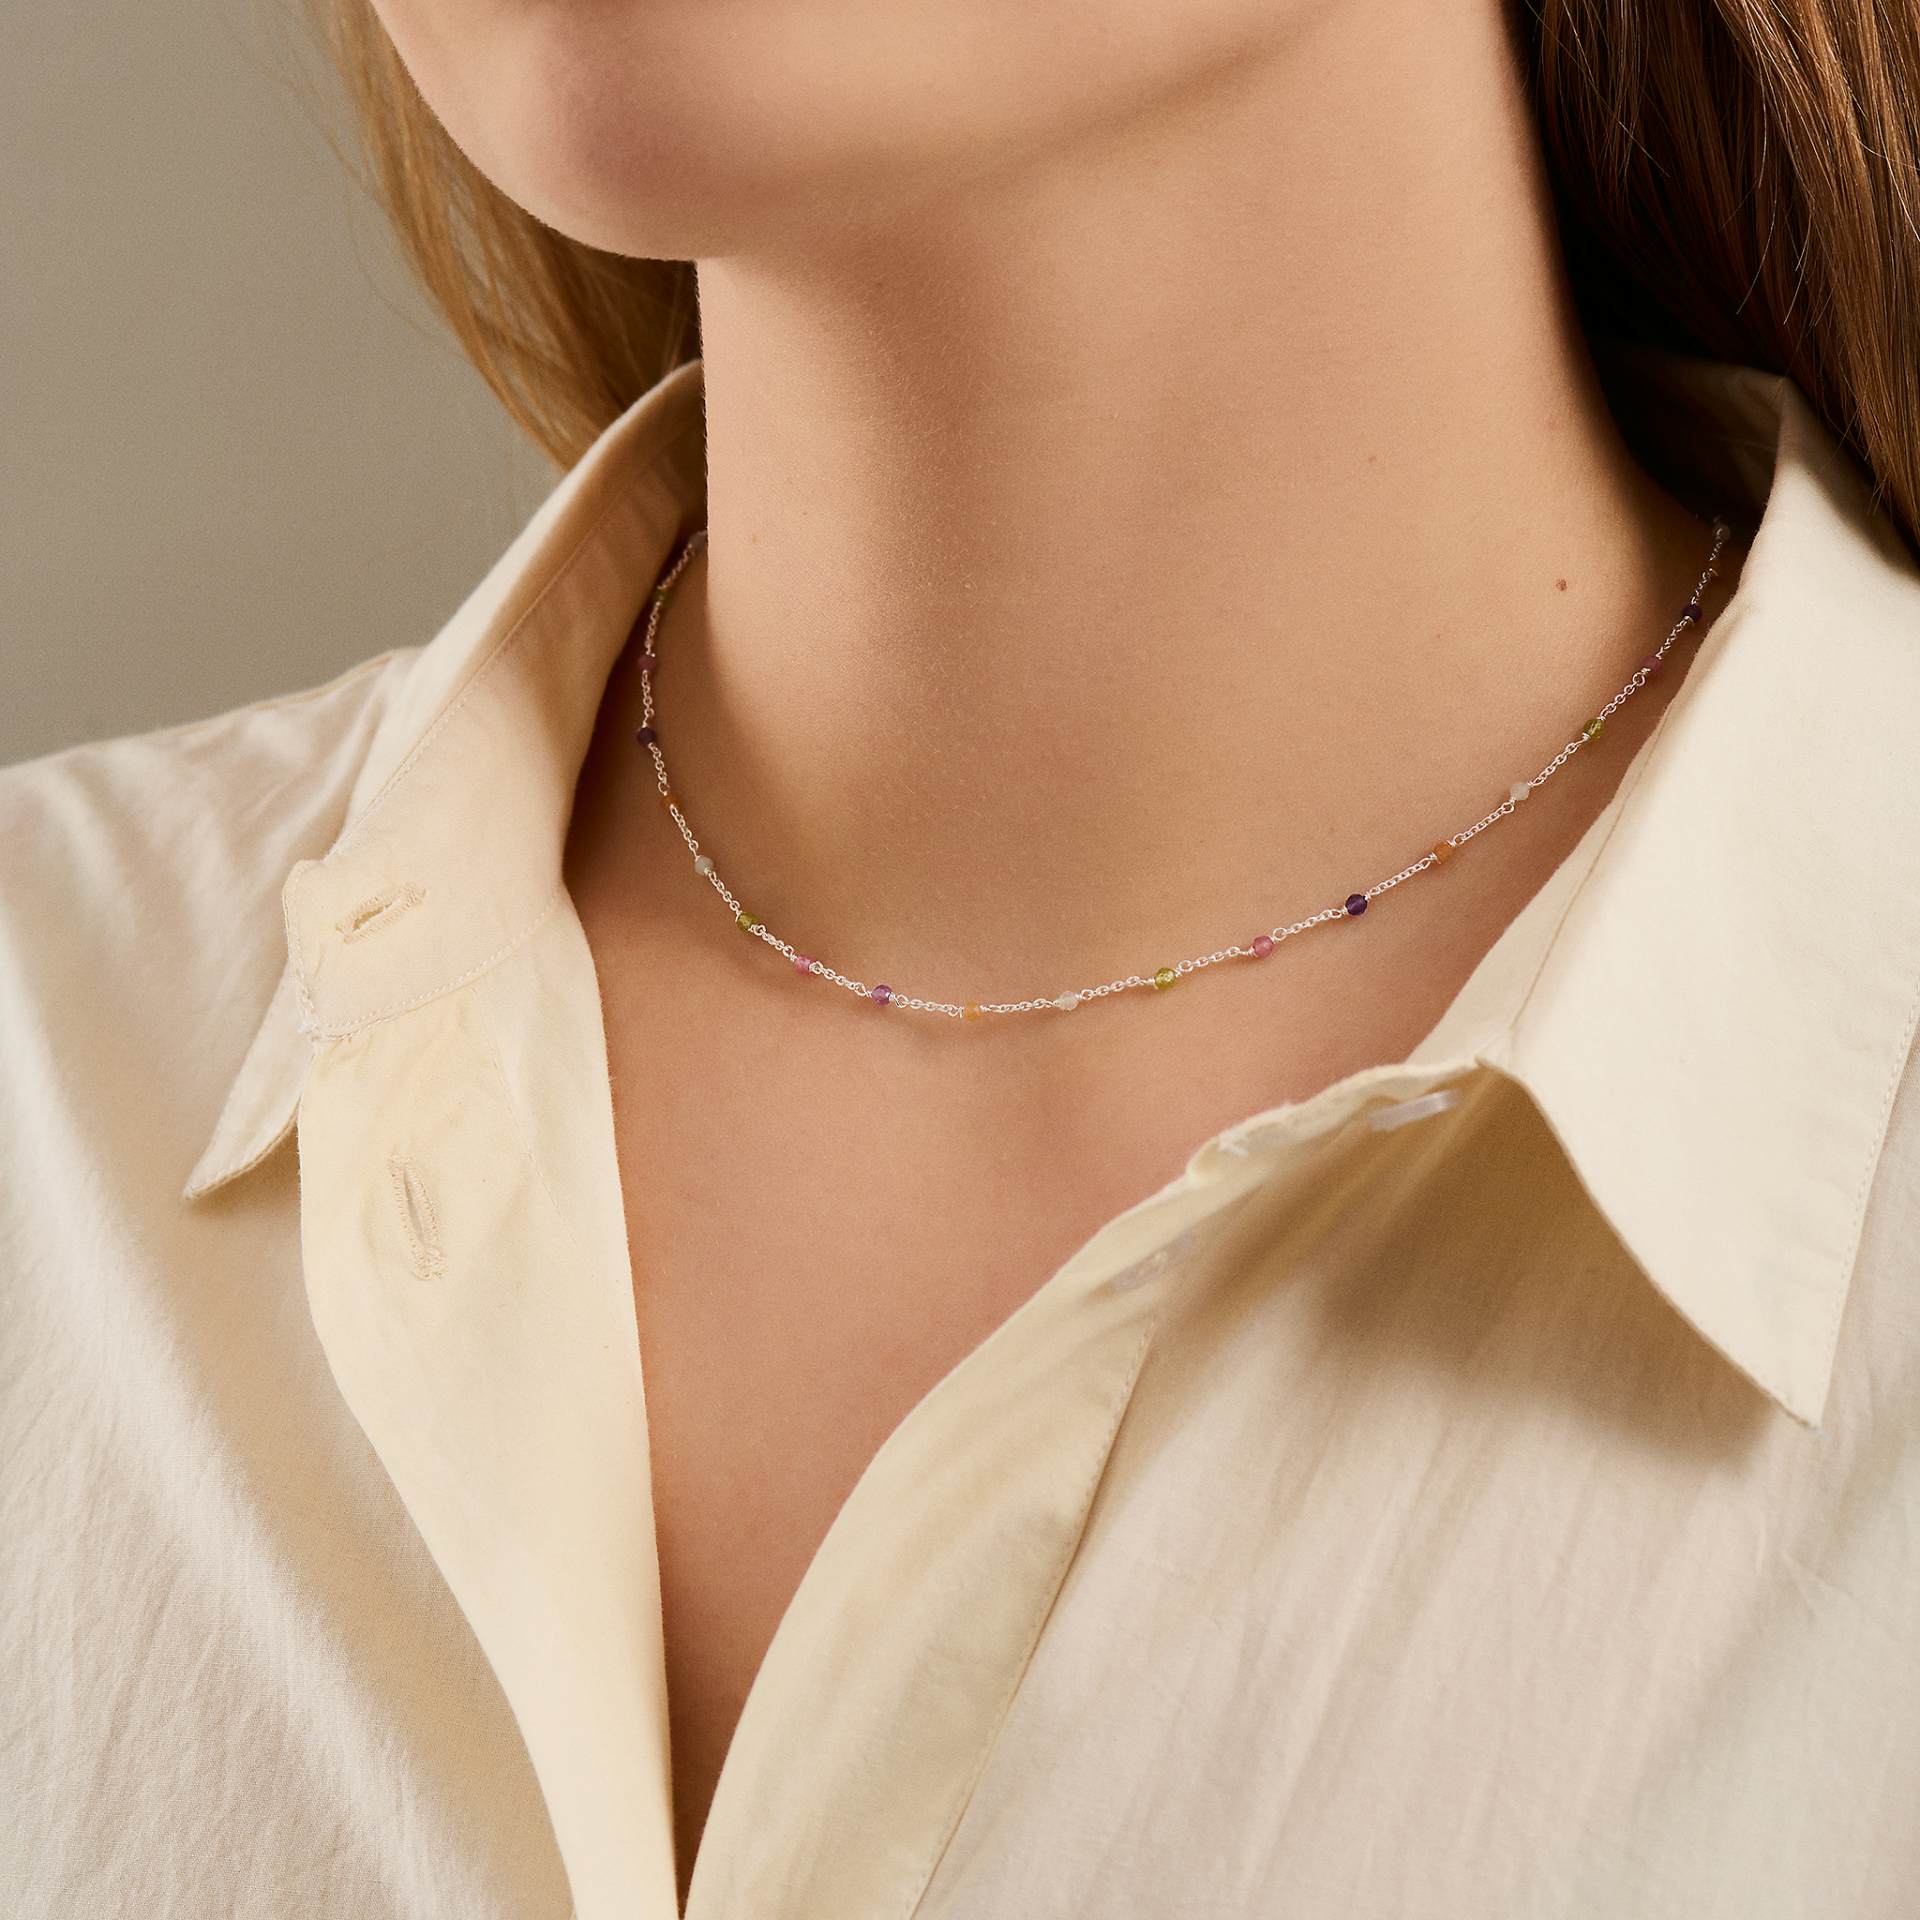 Rainbow Necklace fra Pernille Corydon i Forgylt-Sølv Sterling 925